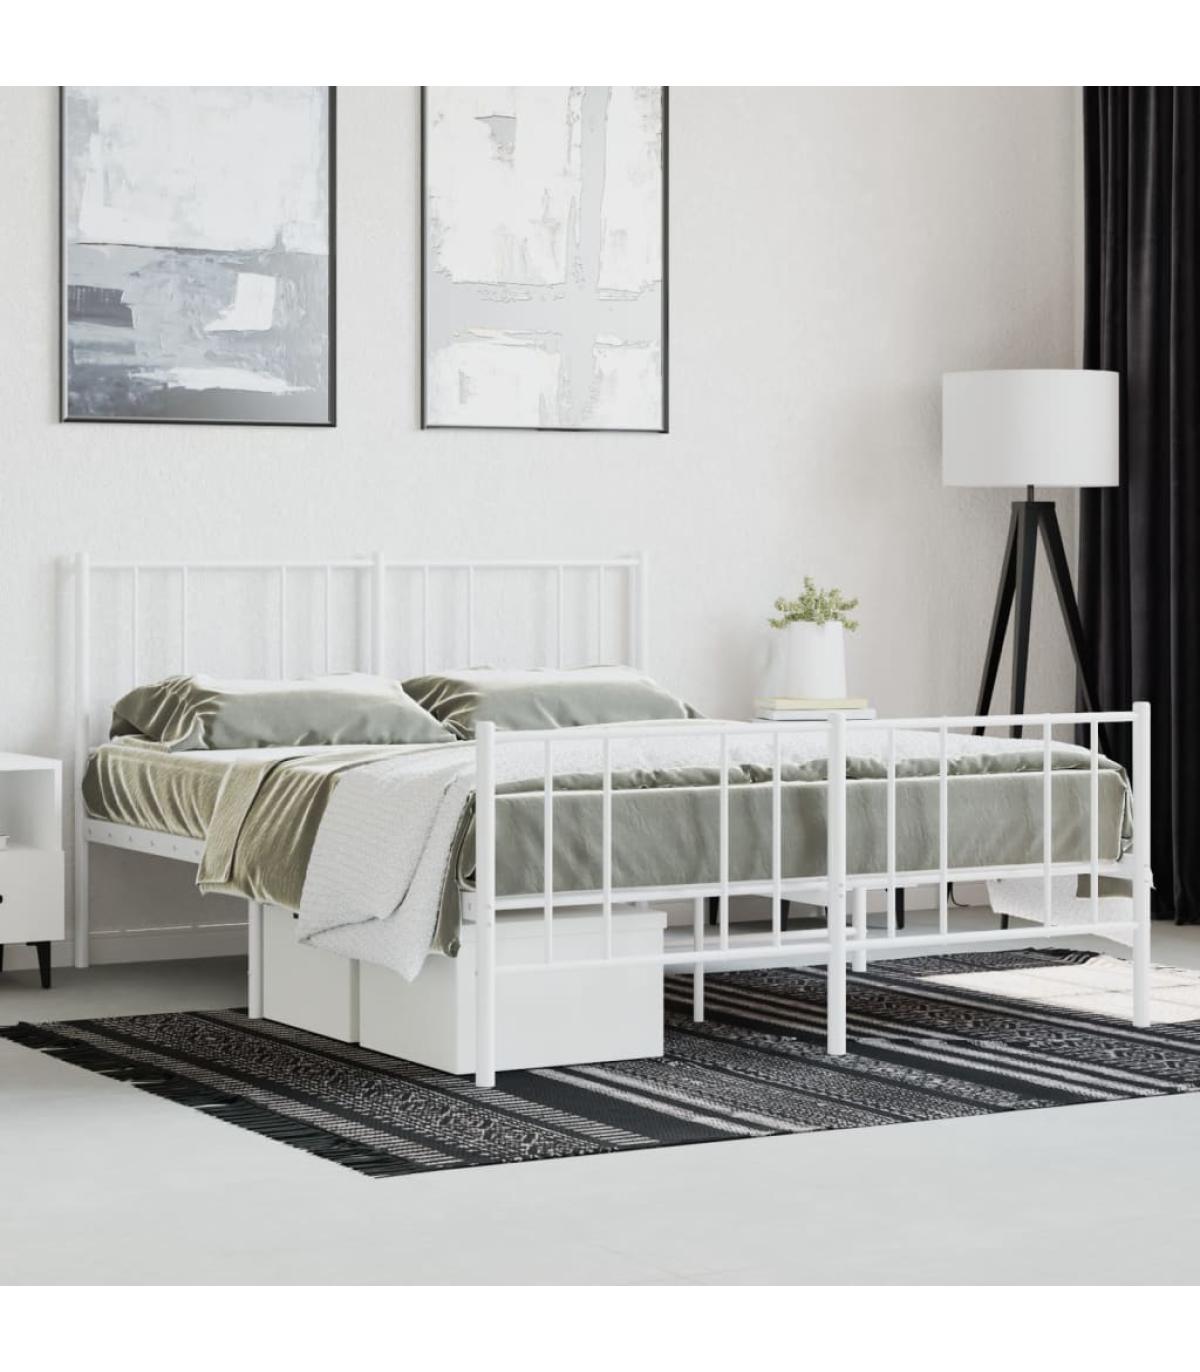 Estructura cama metal con cabecero y estribo blanco 135x190 cm